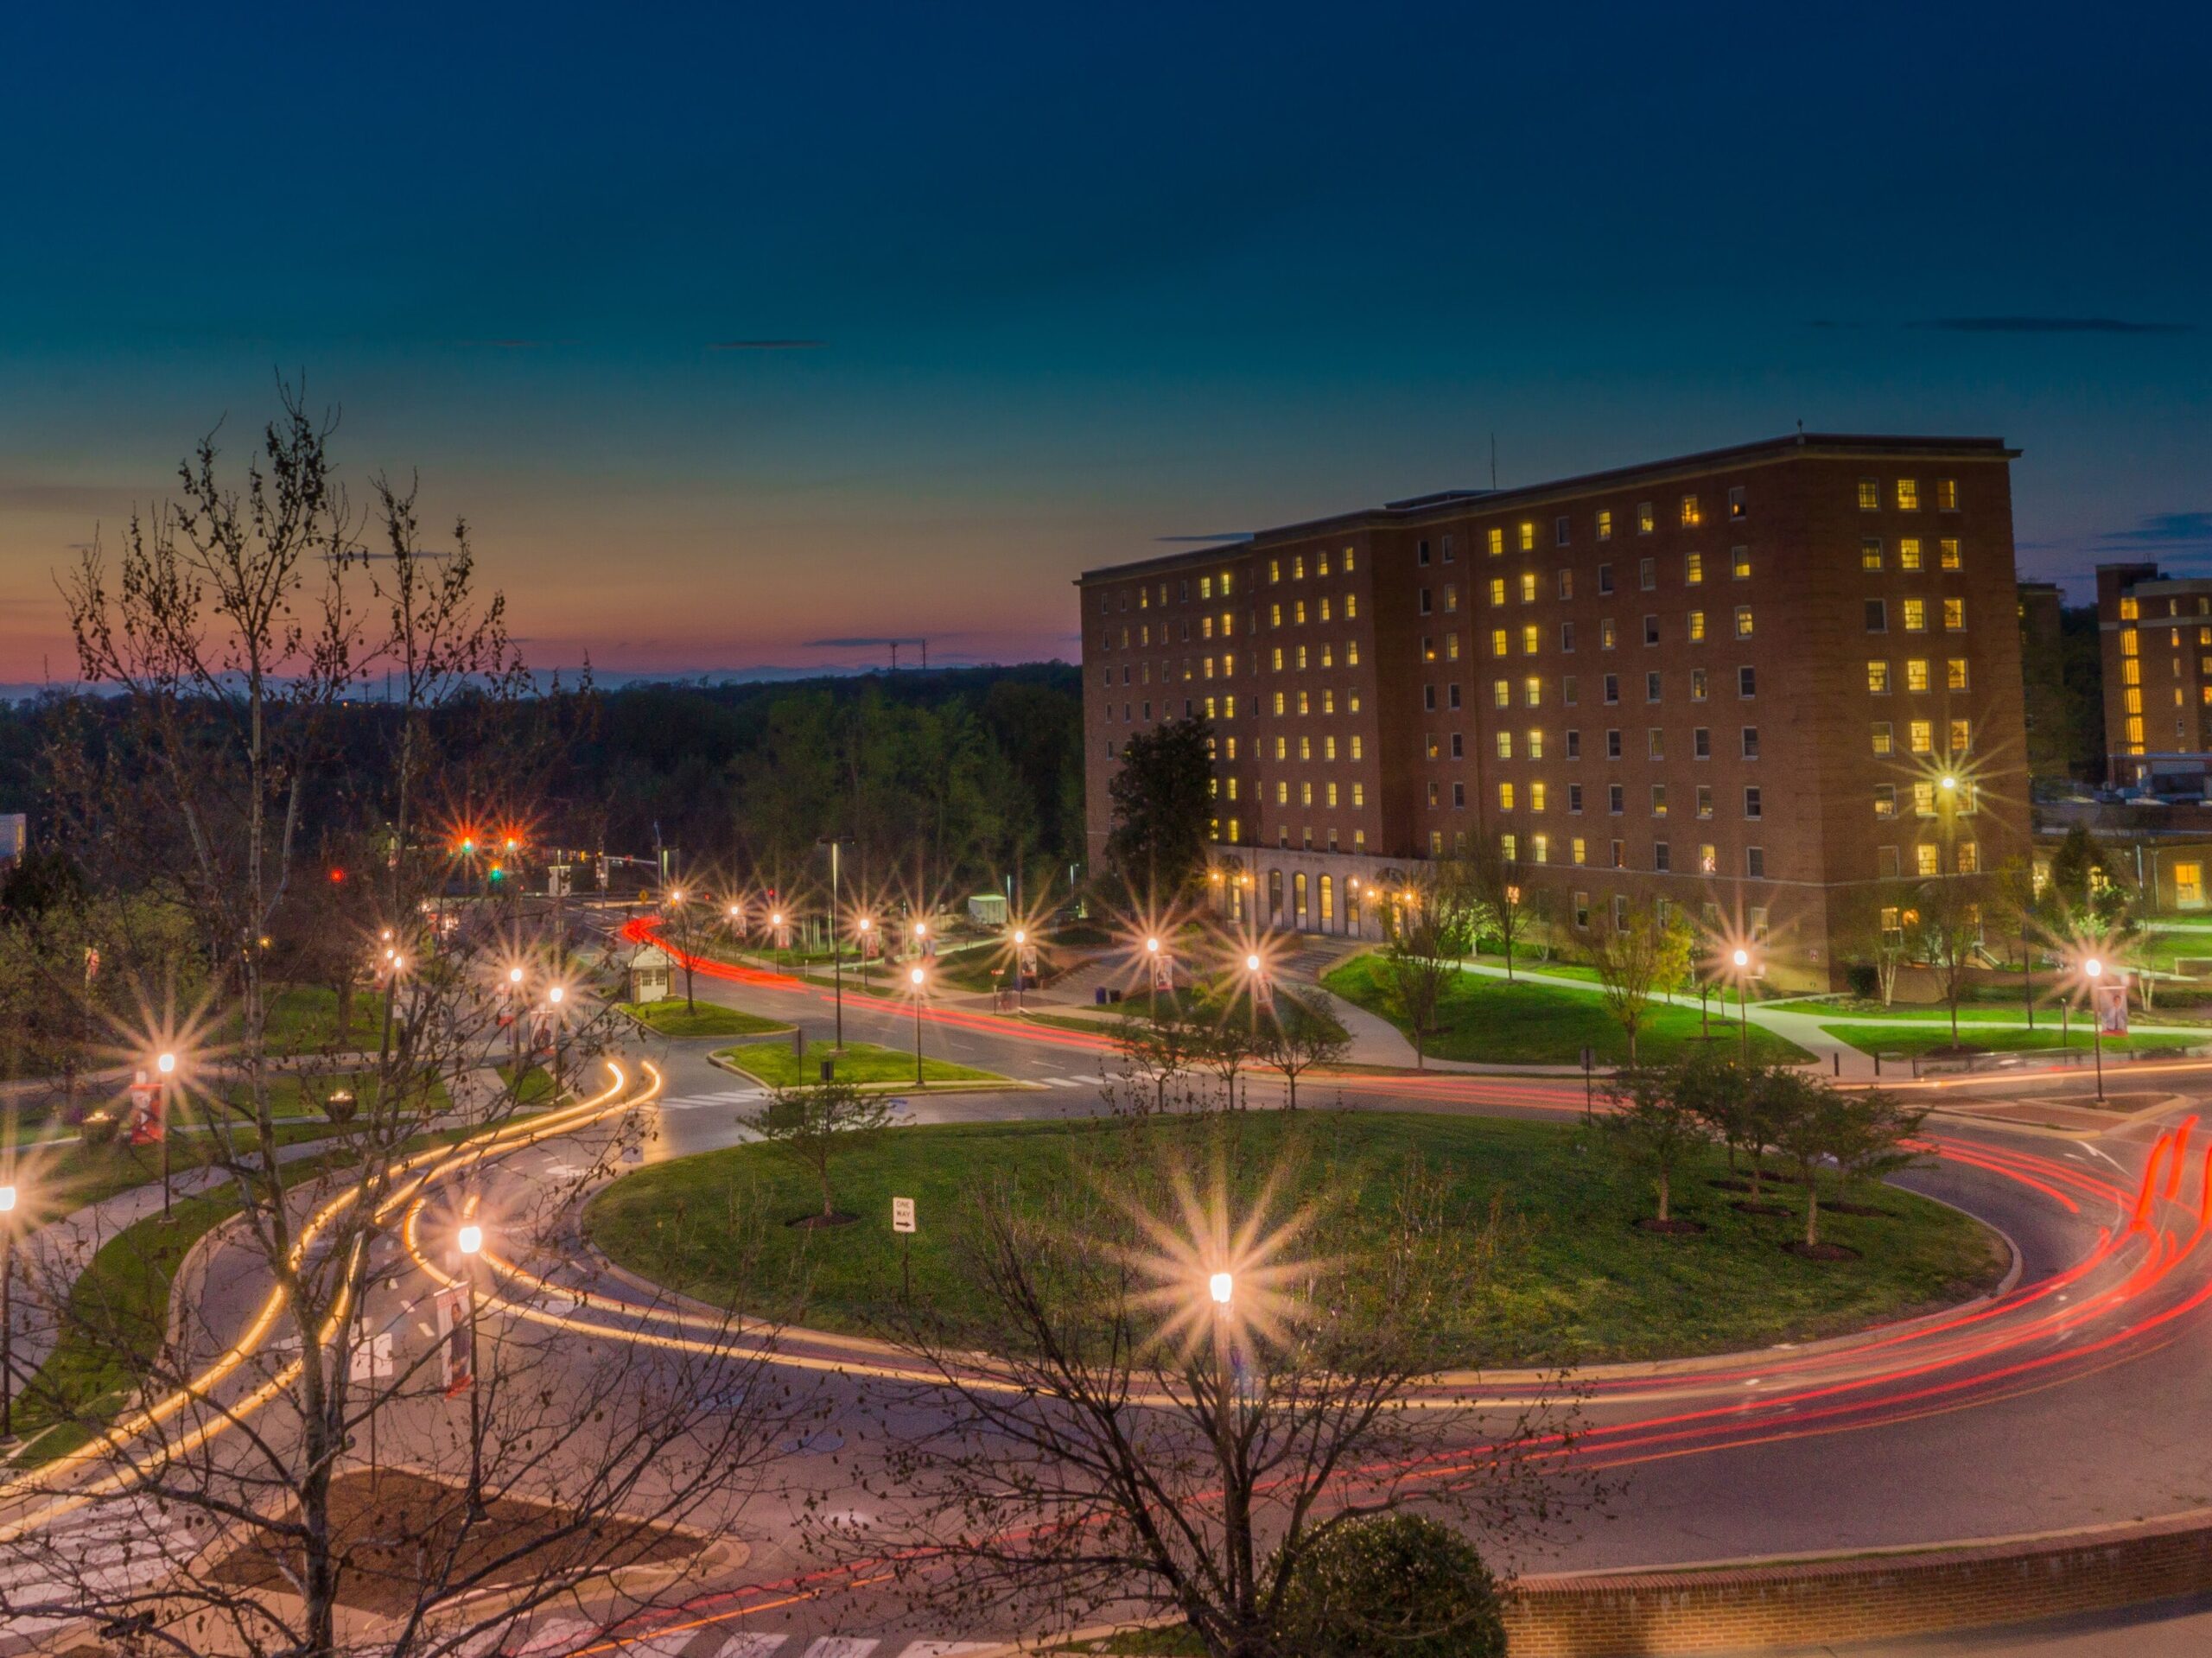 University of Washington ranking